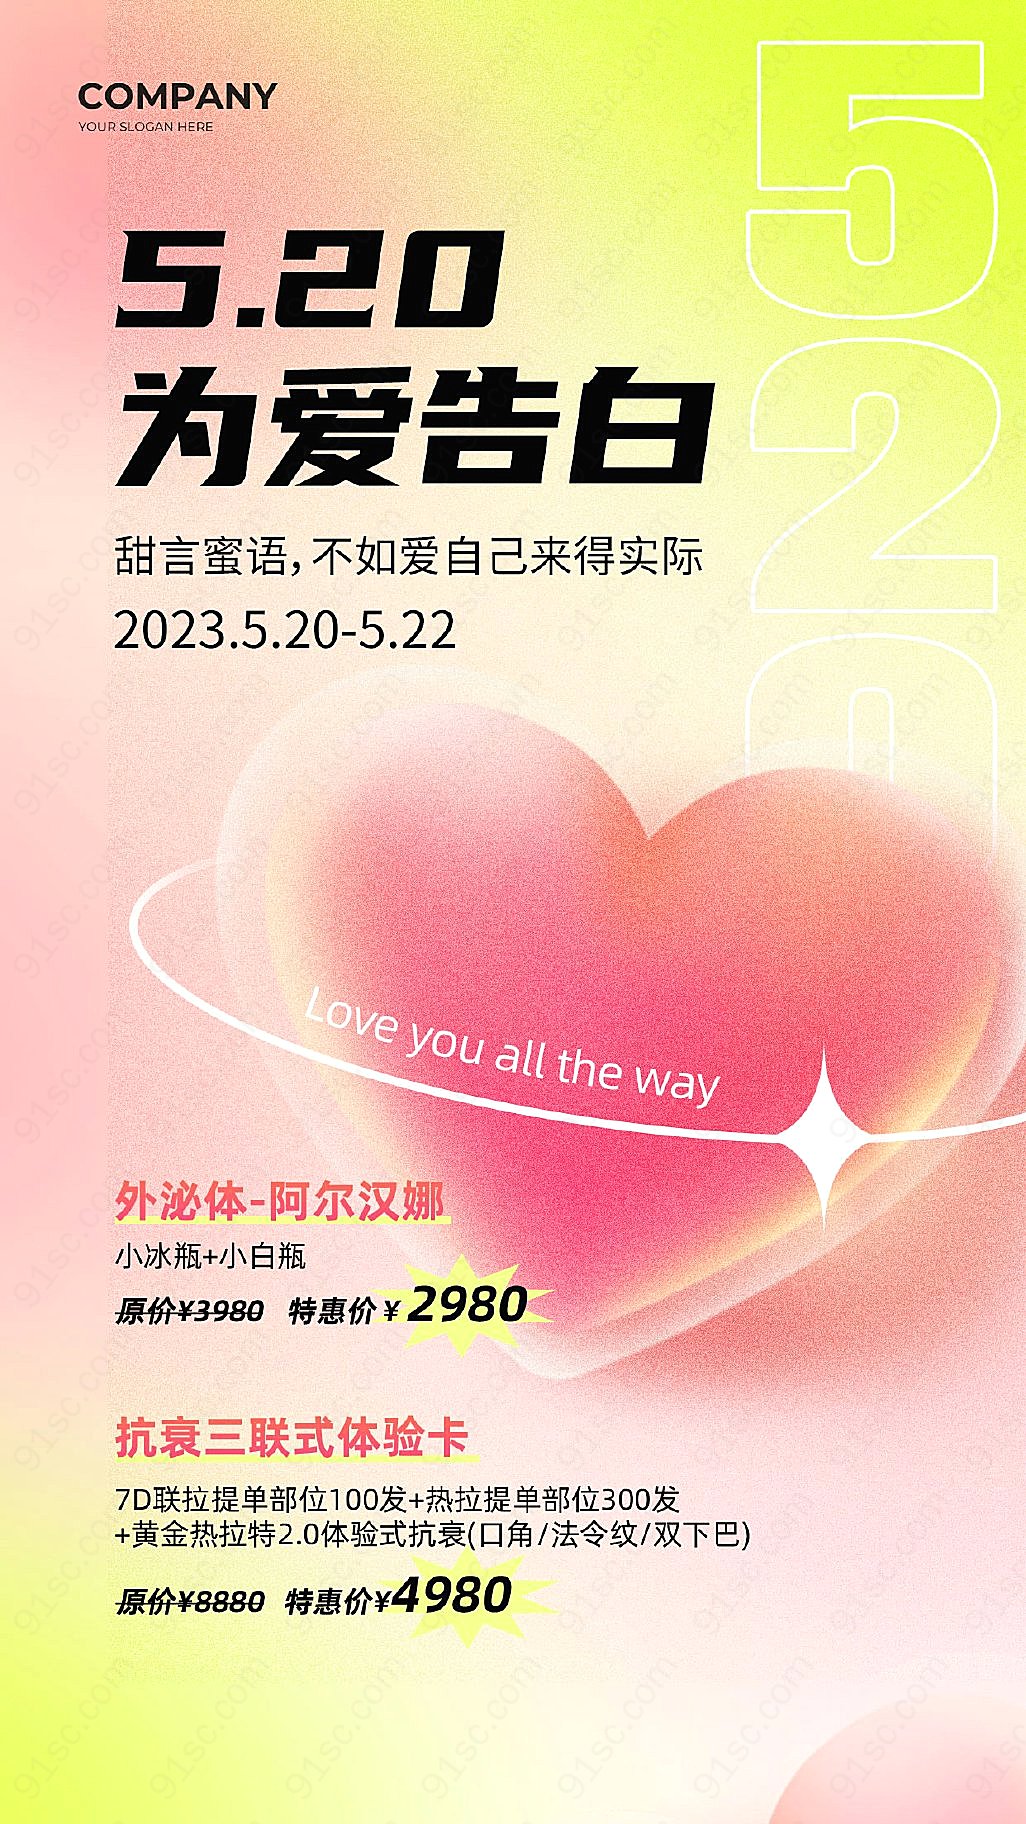 为爱告白520情人节医美美容手机文案海报同意思的标题新媒体用图下载